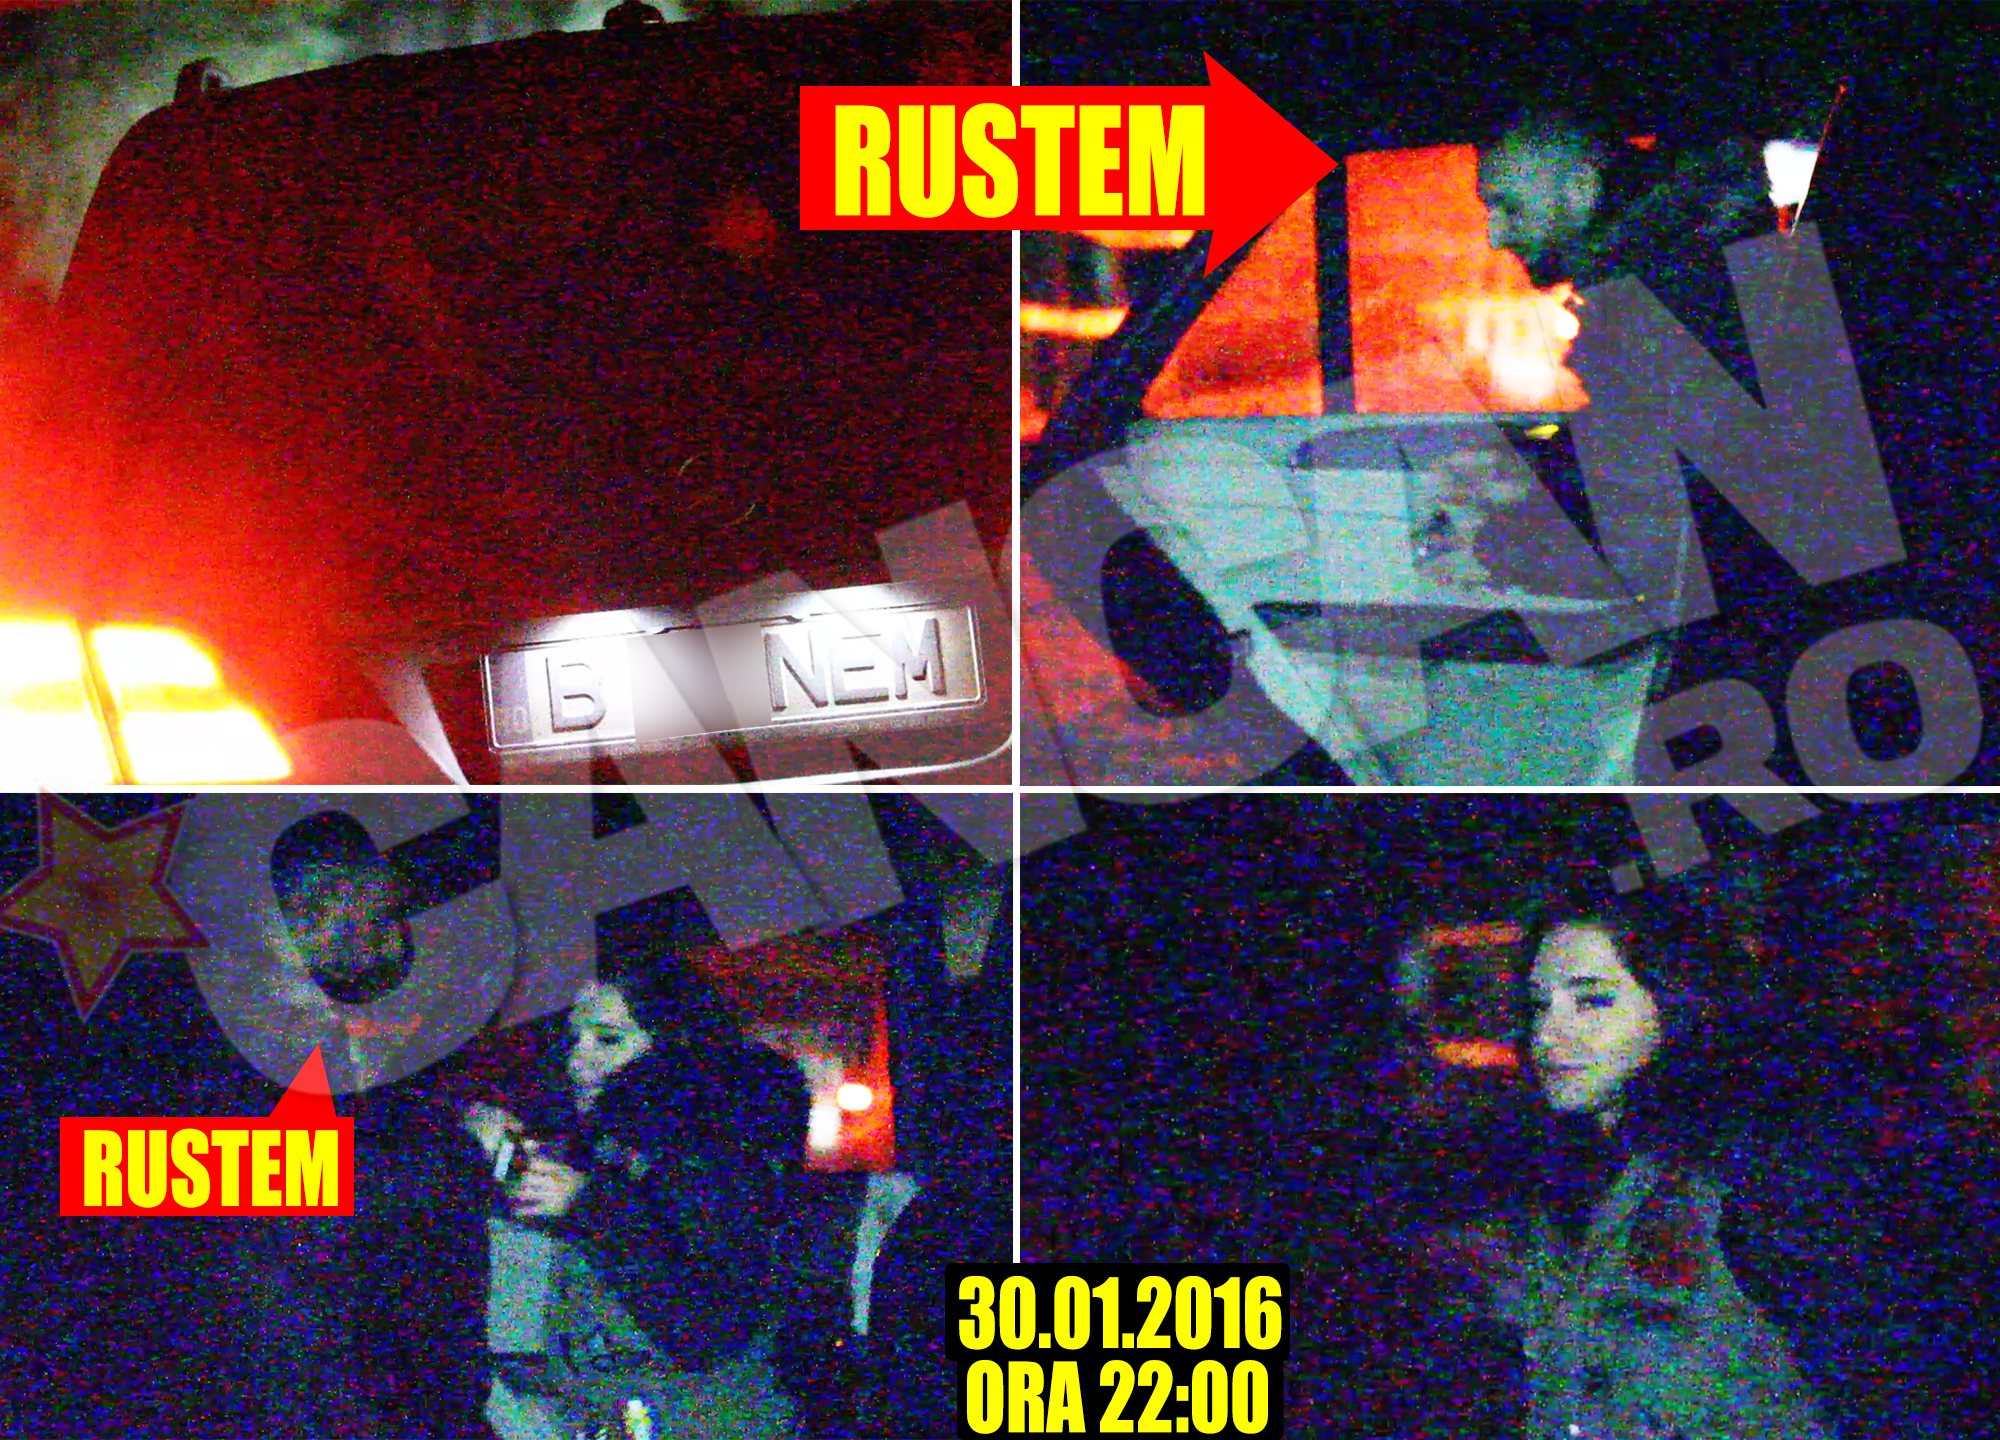 ORA 22:00. Vedem des în filmele americane cum poliţiştii împing oamenii pe bancheta din spate. Diferenţa dintre aceştia şi Rustem Ionescu este că poliţistul bucureştean nu închide uşa şi se duce la volan, ci se urcă după ei.